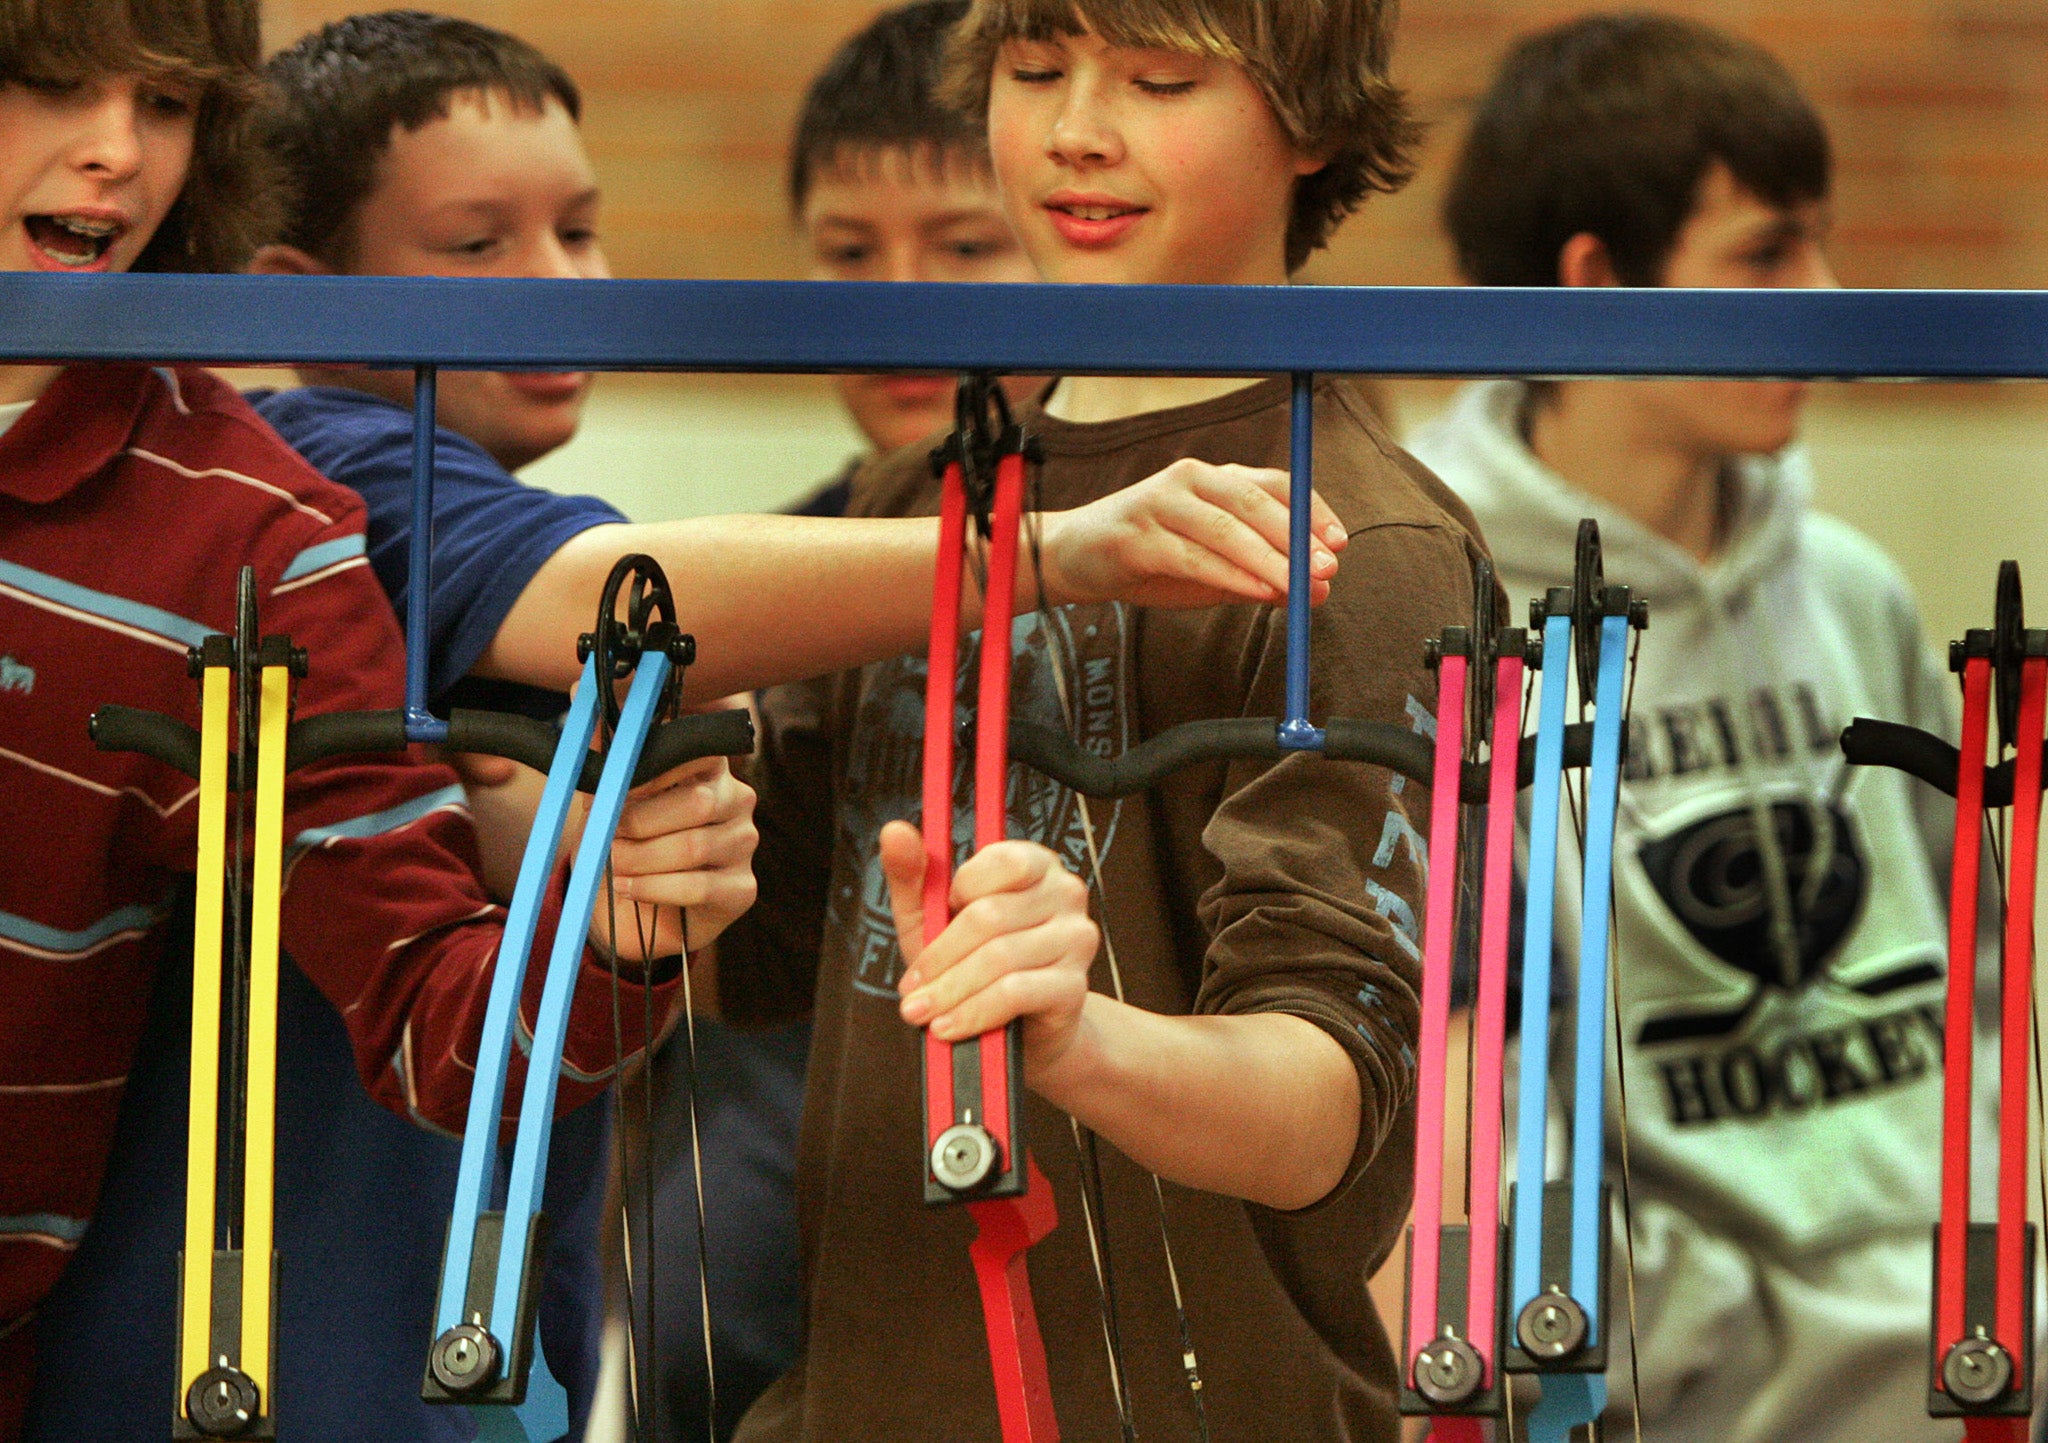 Kids learn archery in school programs.